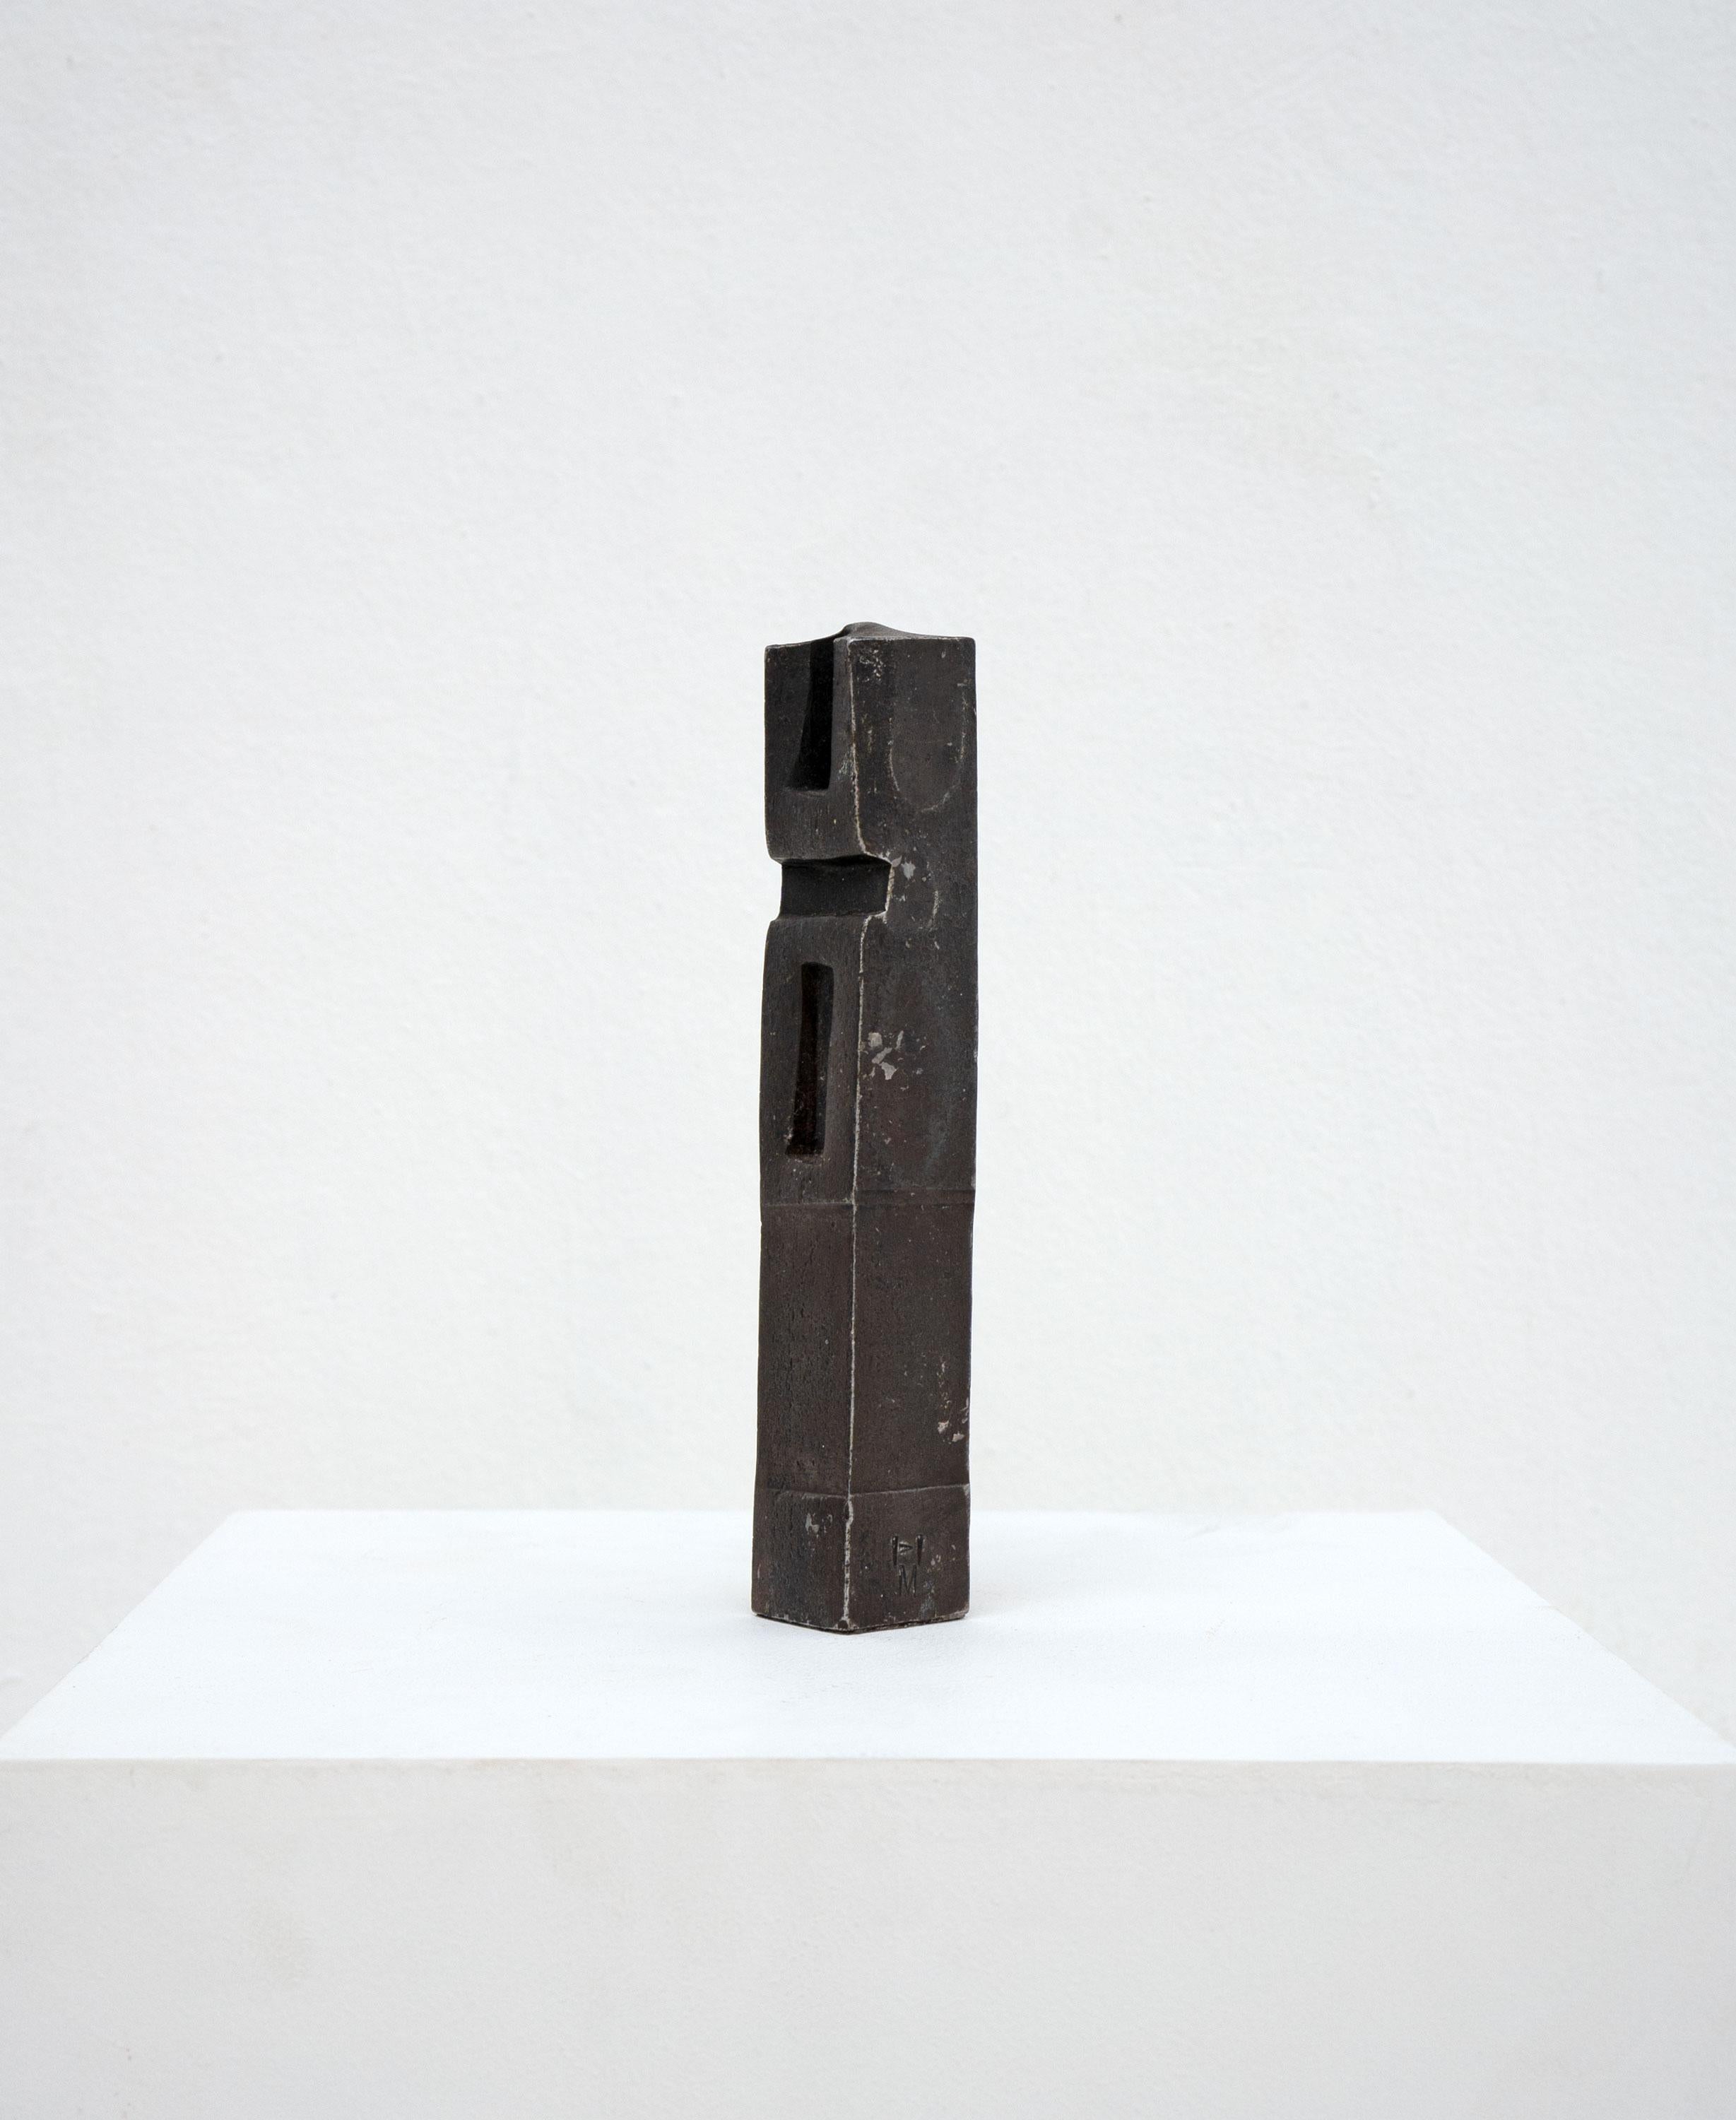 Sculpture abstraite sans titre en fer forgé du sculpteur allemand Hannes Meinhard (1937-2016). 

Monogramme HM.

Dimensions (cm, approx.)
Hauteur : 20
Largeur : 3
Profondeur : 3